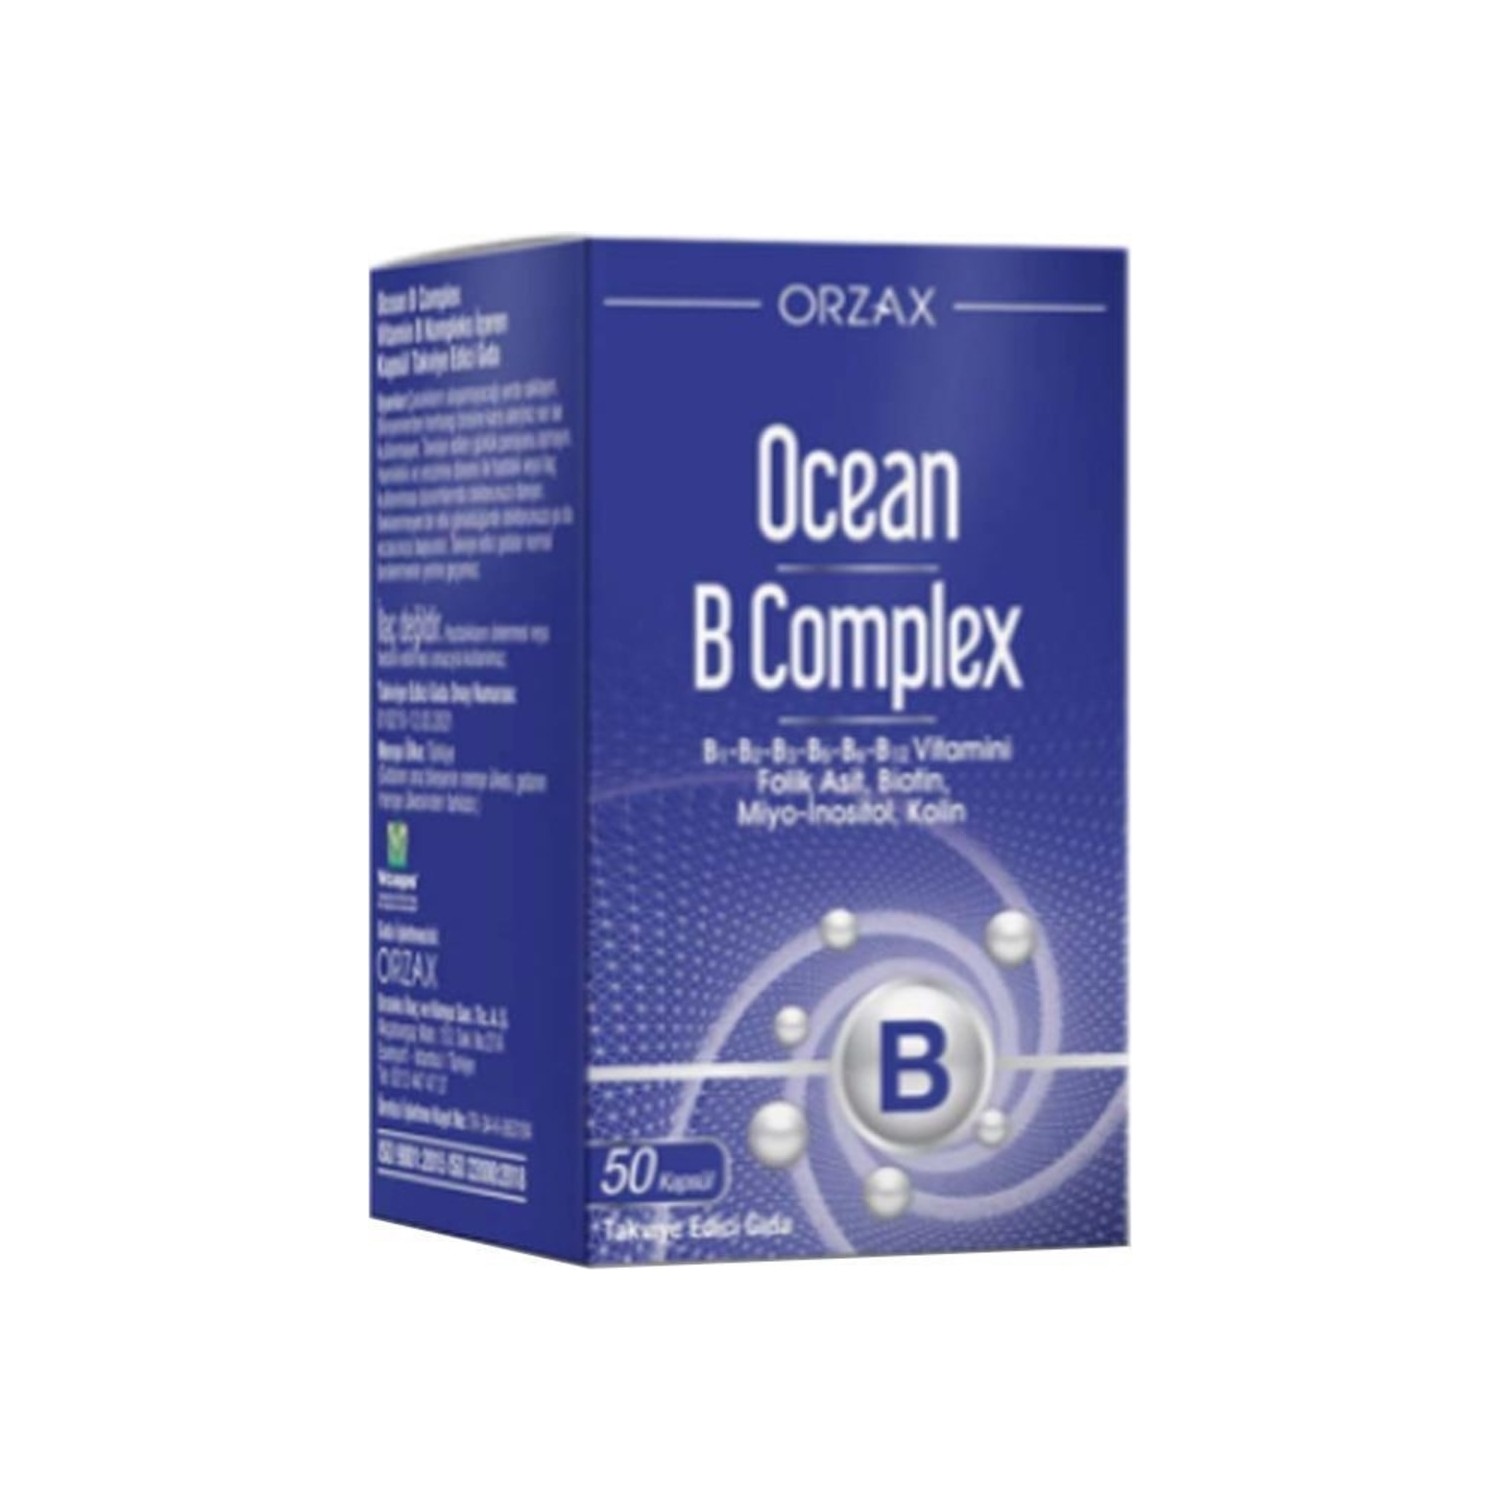 Пищевая комплексная добавка Ocean Orzax B Supplementary Food, 50 капсул фолиевая кислота витамины b6 и b12 для взрослых 50 таблеток по 100 мг